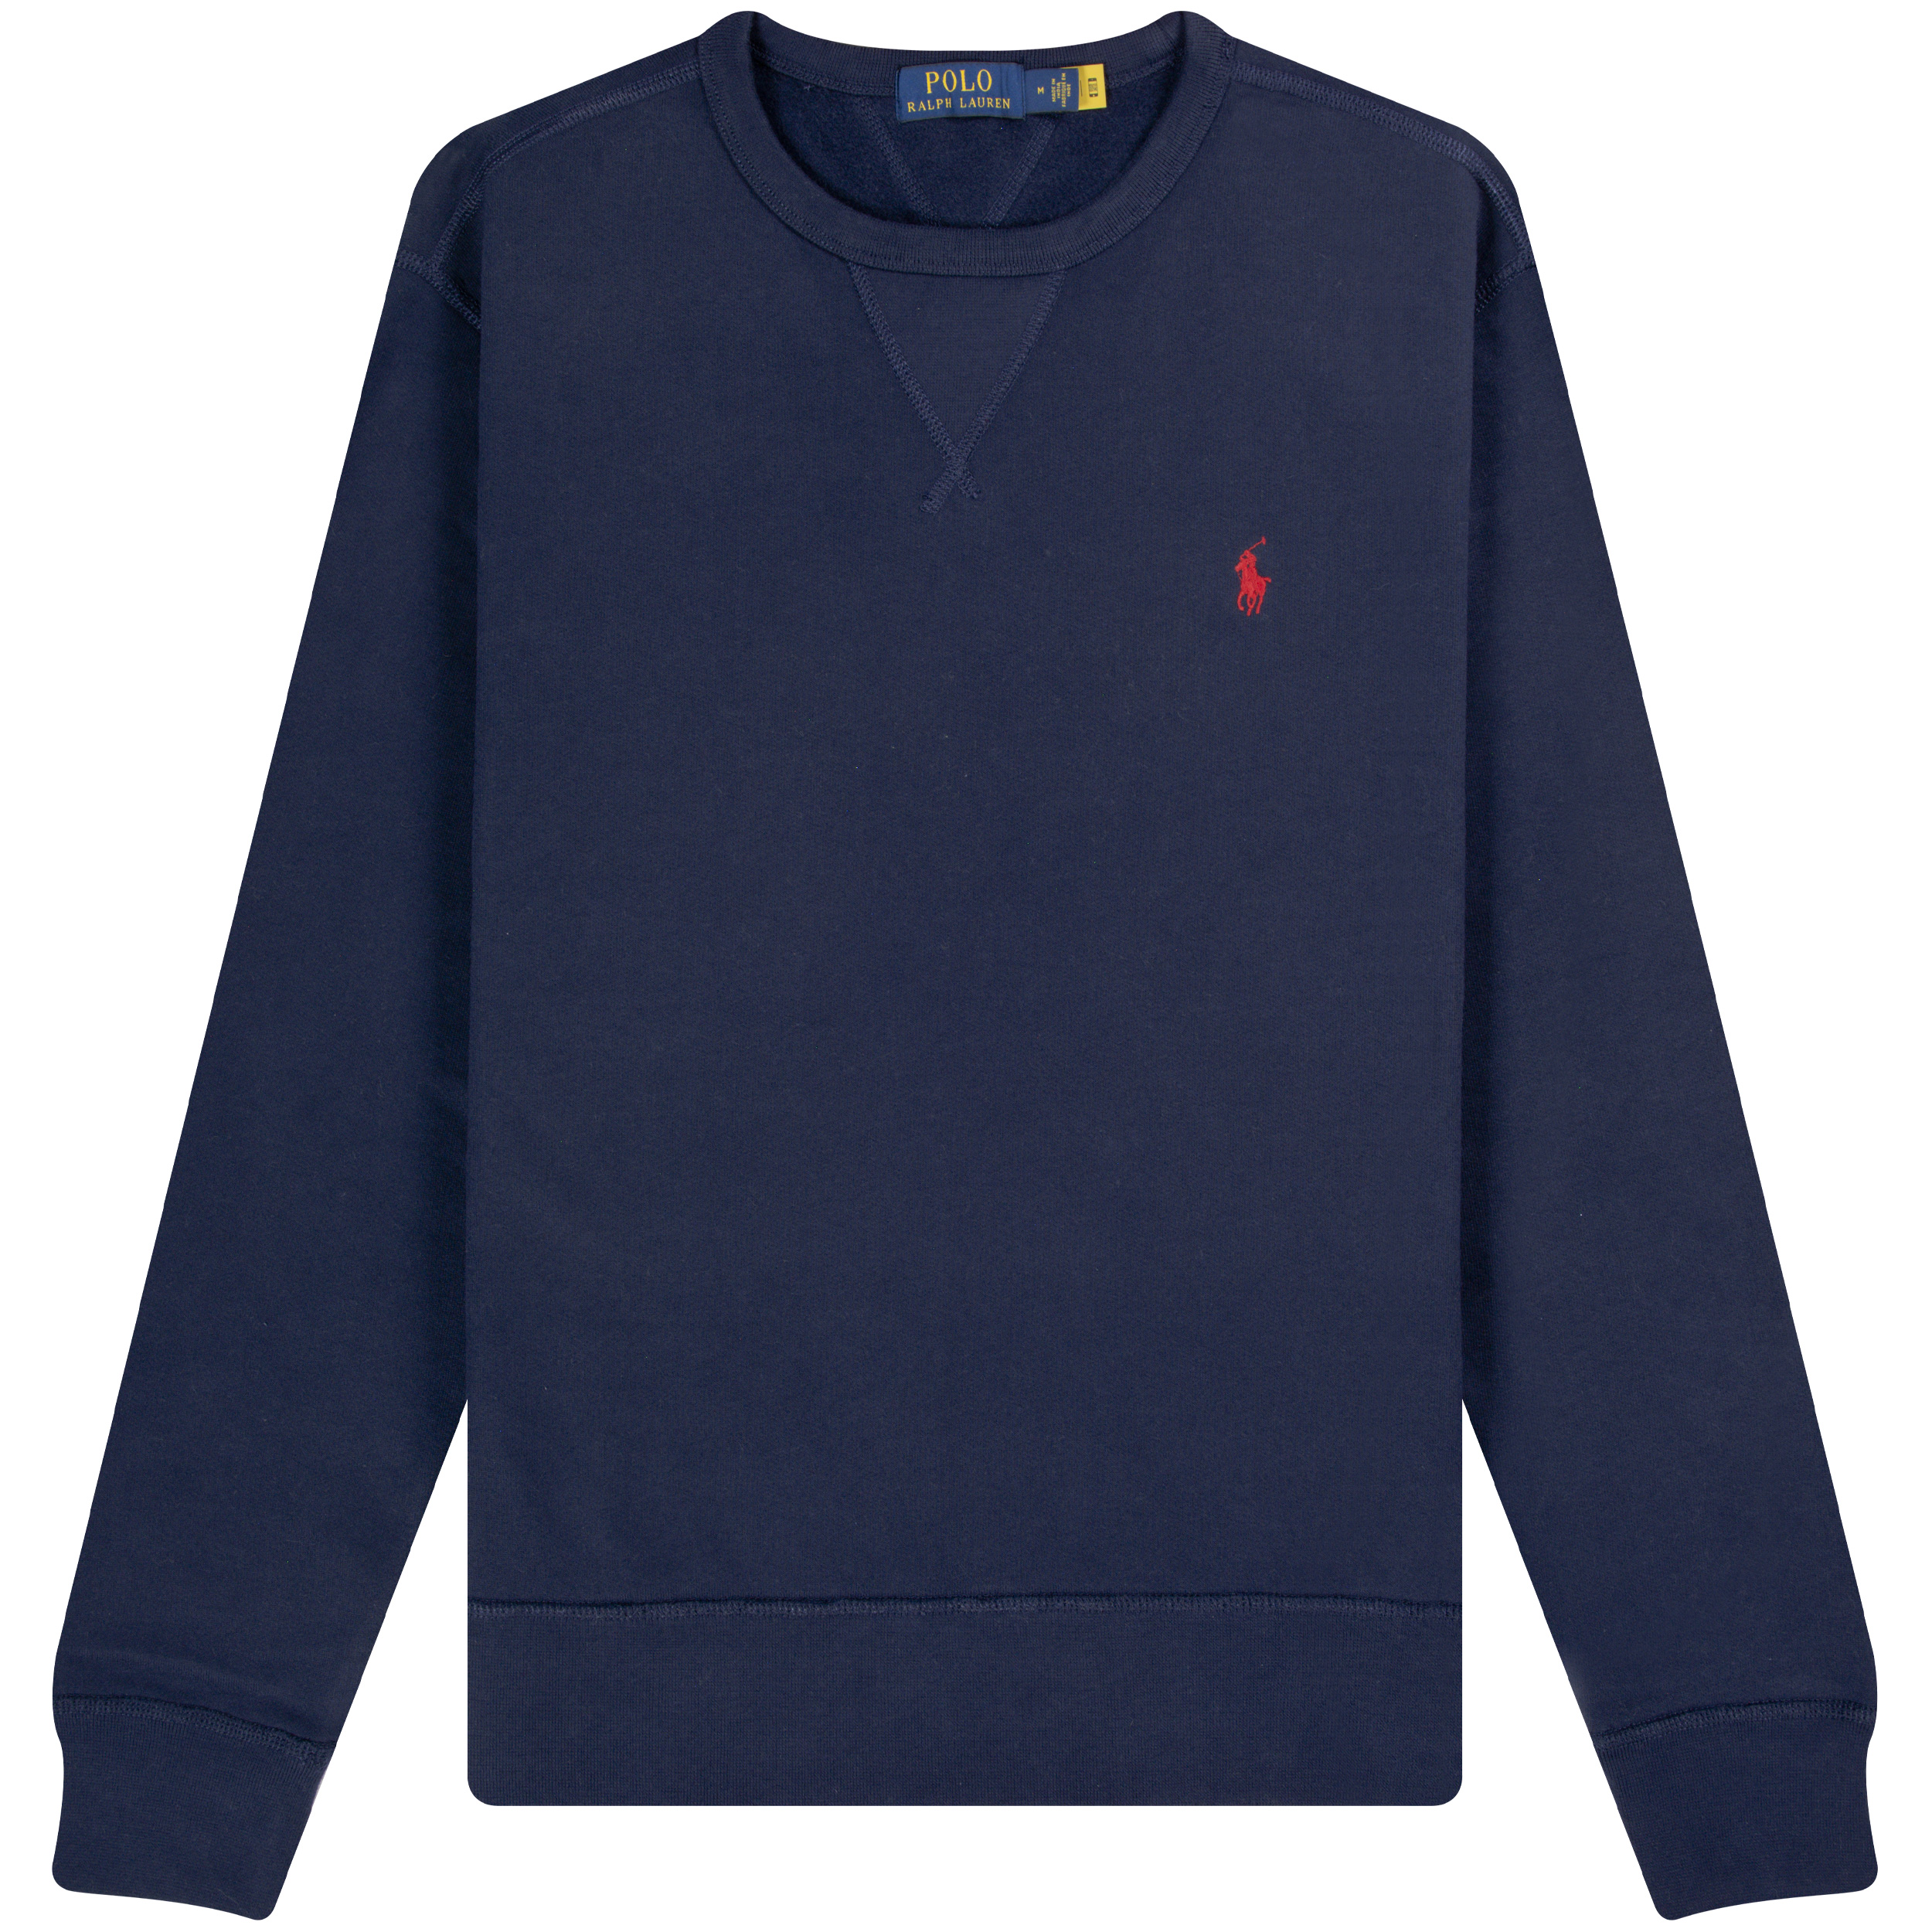 Polo Ralph Lauren ’Core’ Classic Crew Sweatshirt Navy